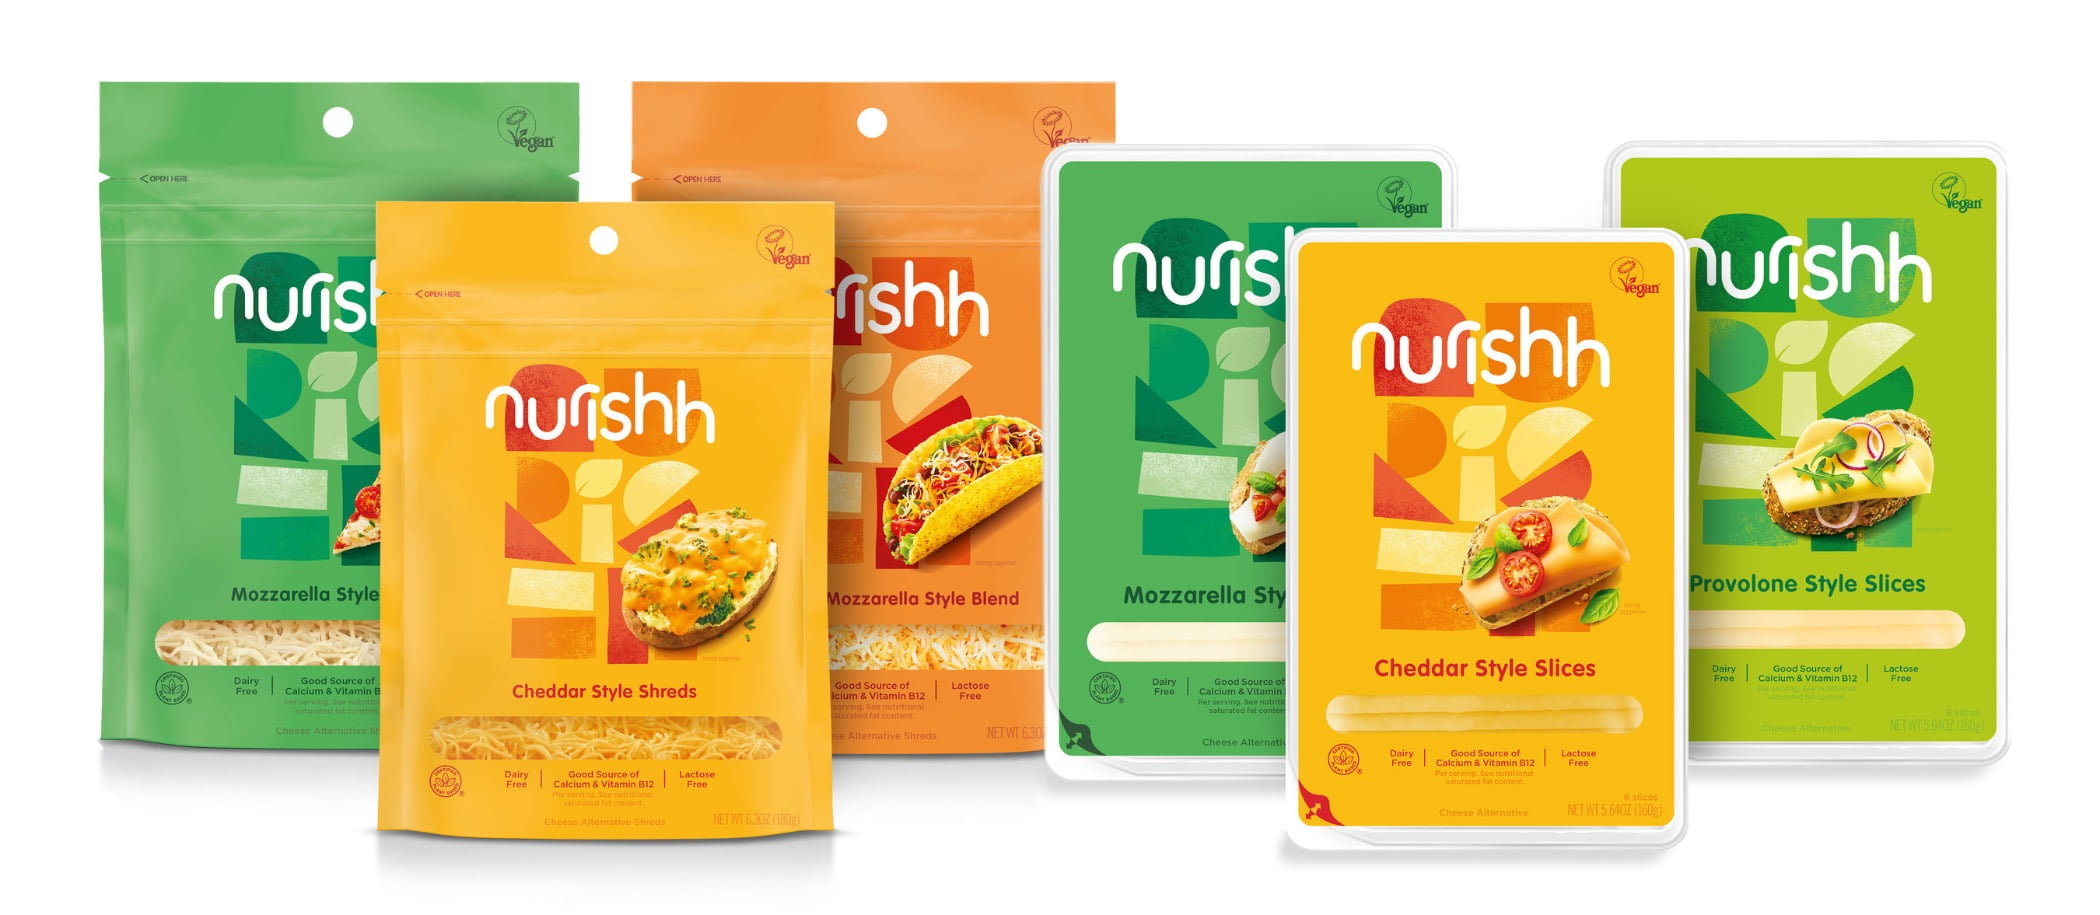 Nurishh-Cheese-Bel-Brands